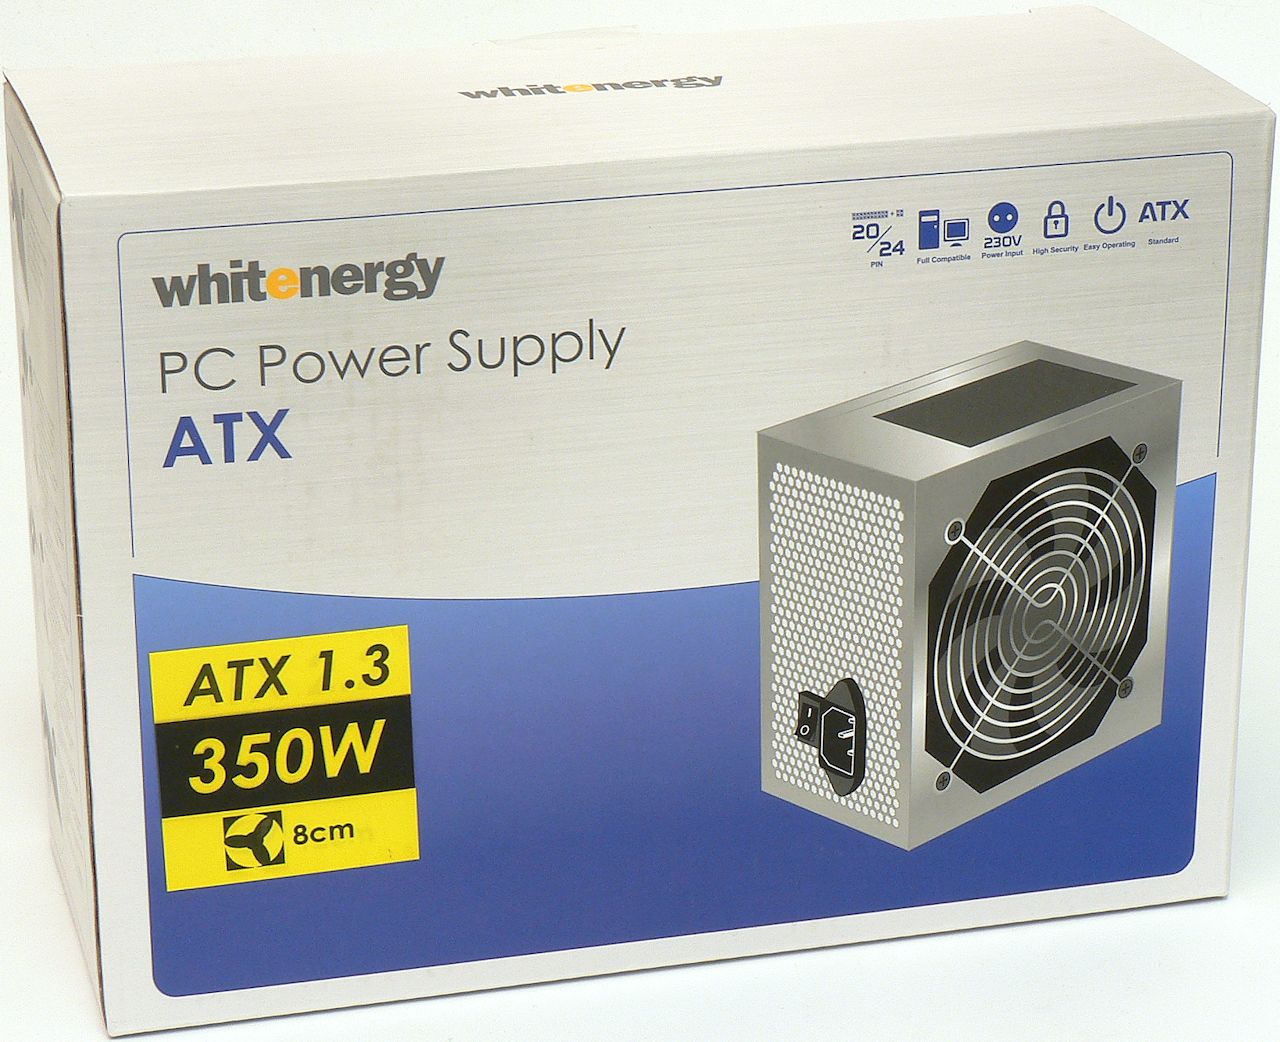 Whitenergy ATX-350W (05749): horor za bílého dne 